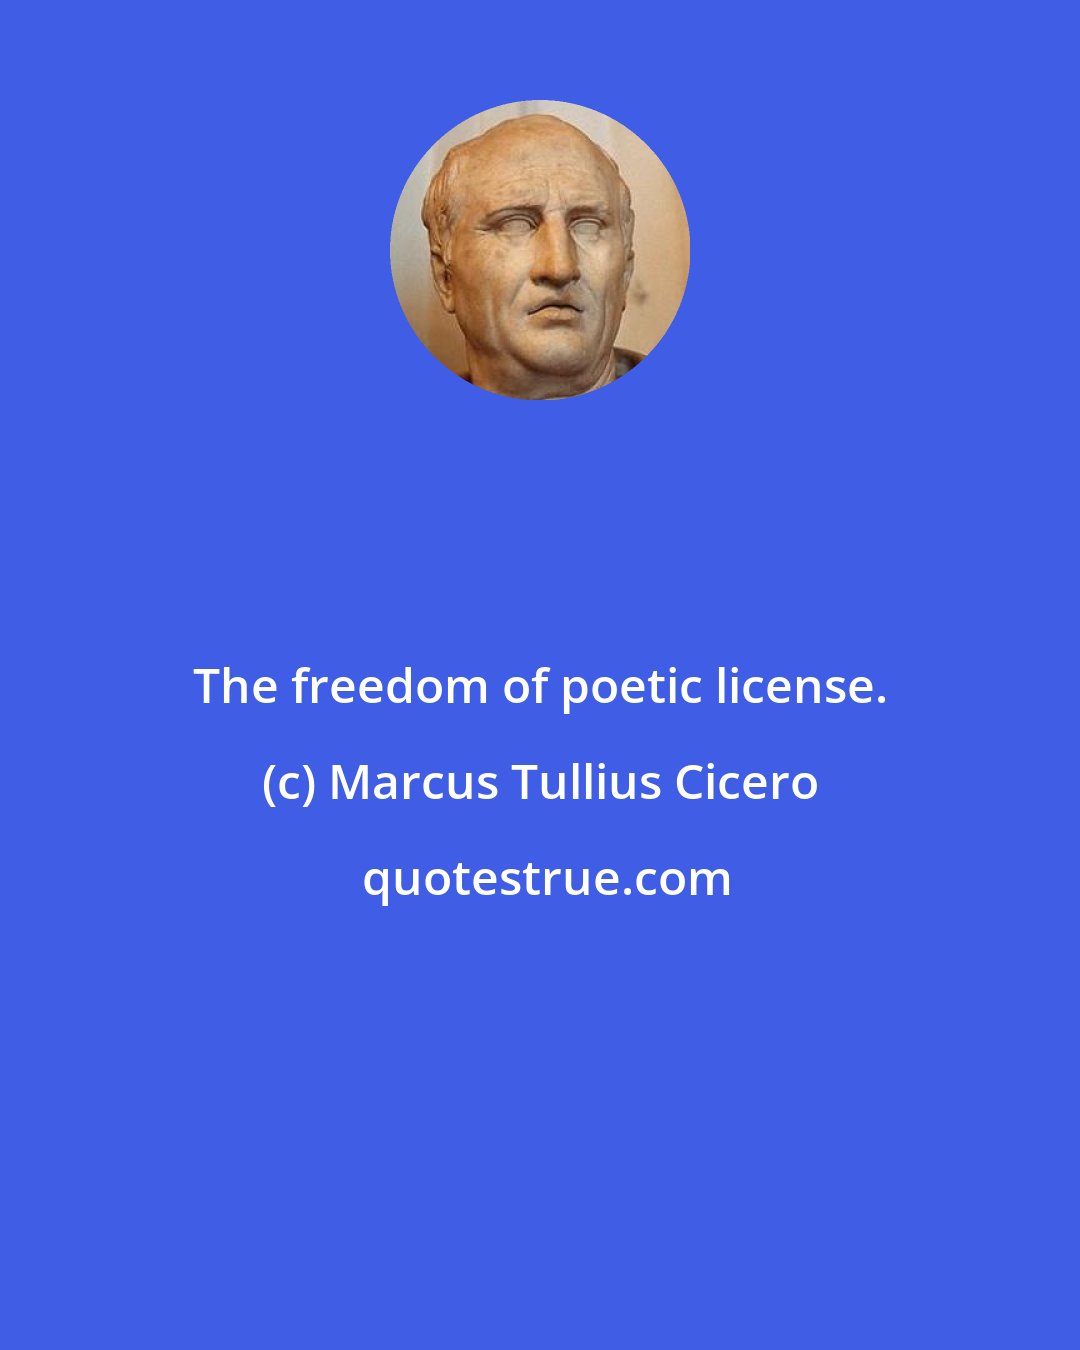 Marcus Tullius Cicero: The freedom of poetic license.